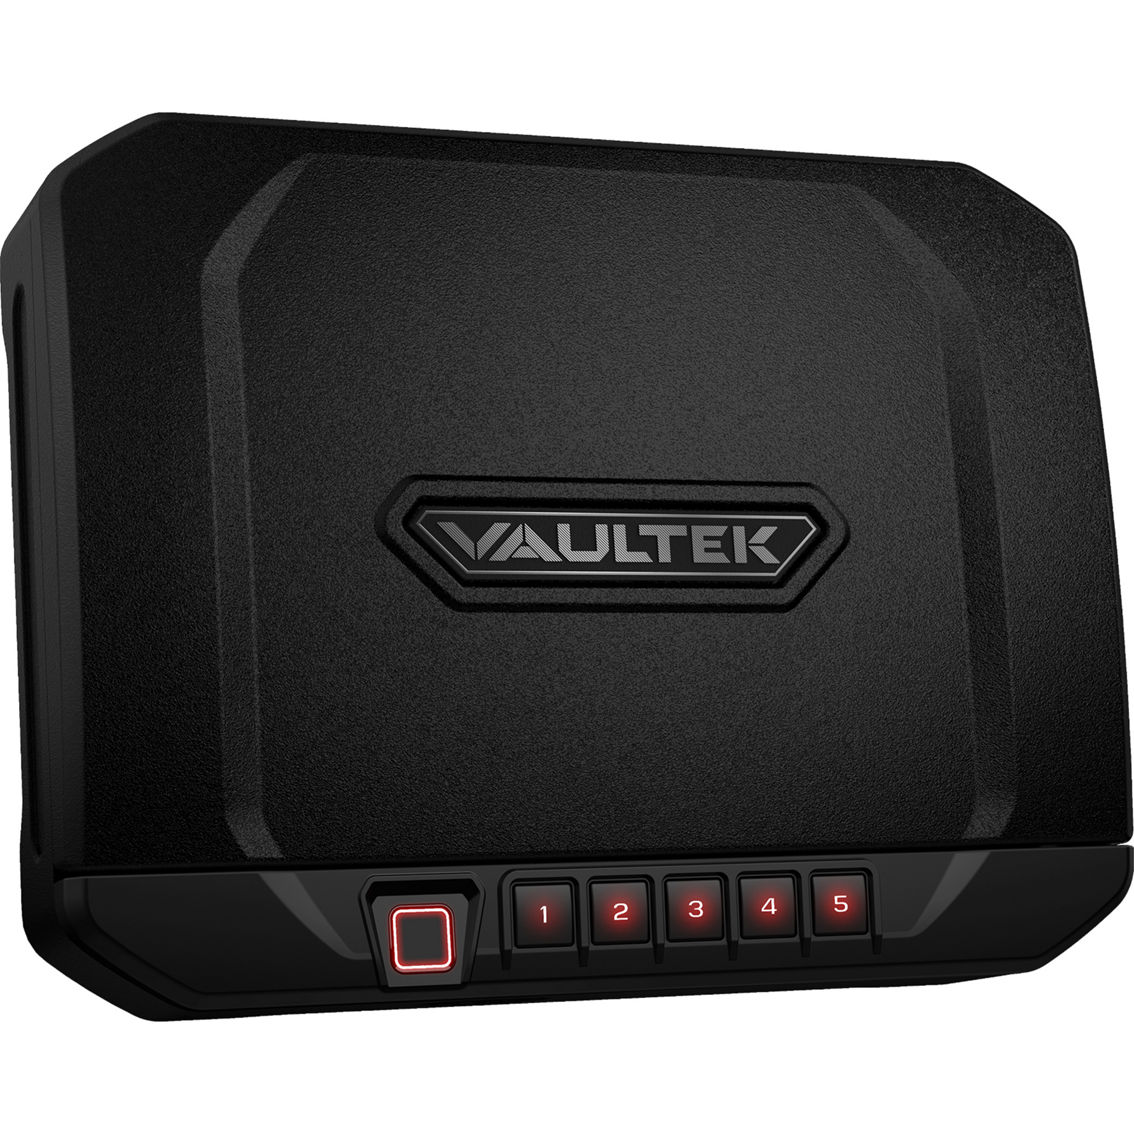 Vaultek 20 Series VS20i Safe - Image 2 of 4